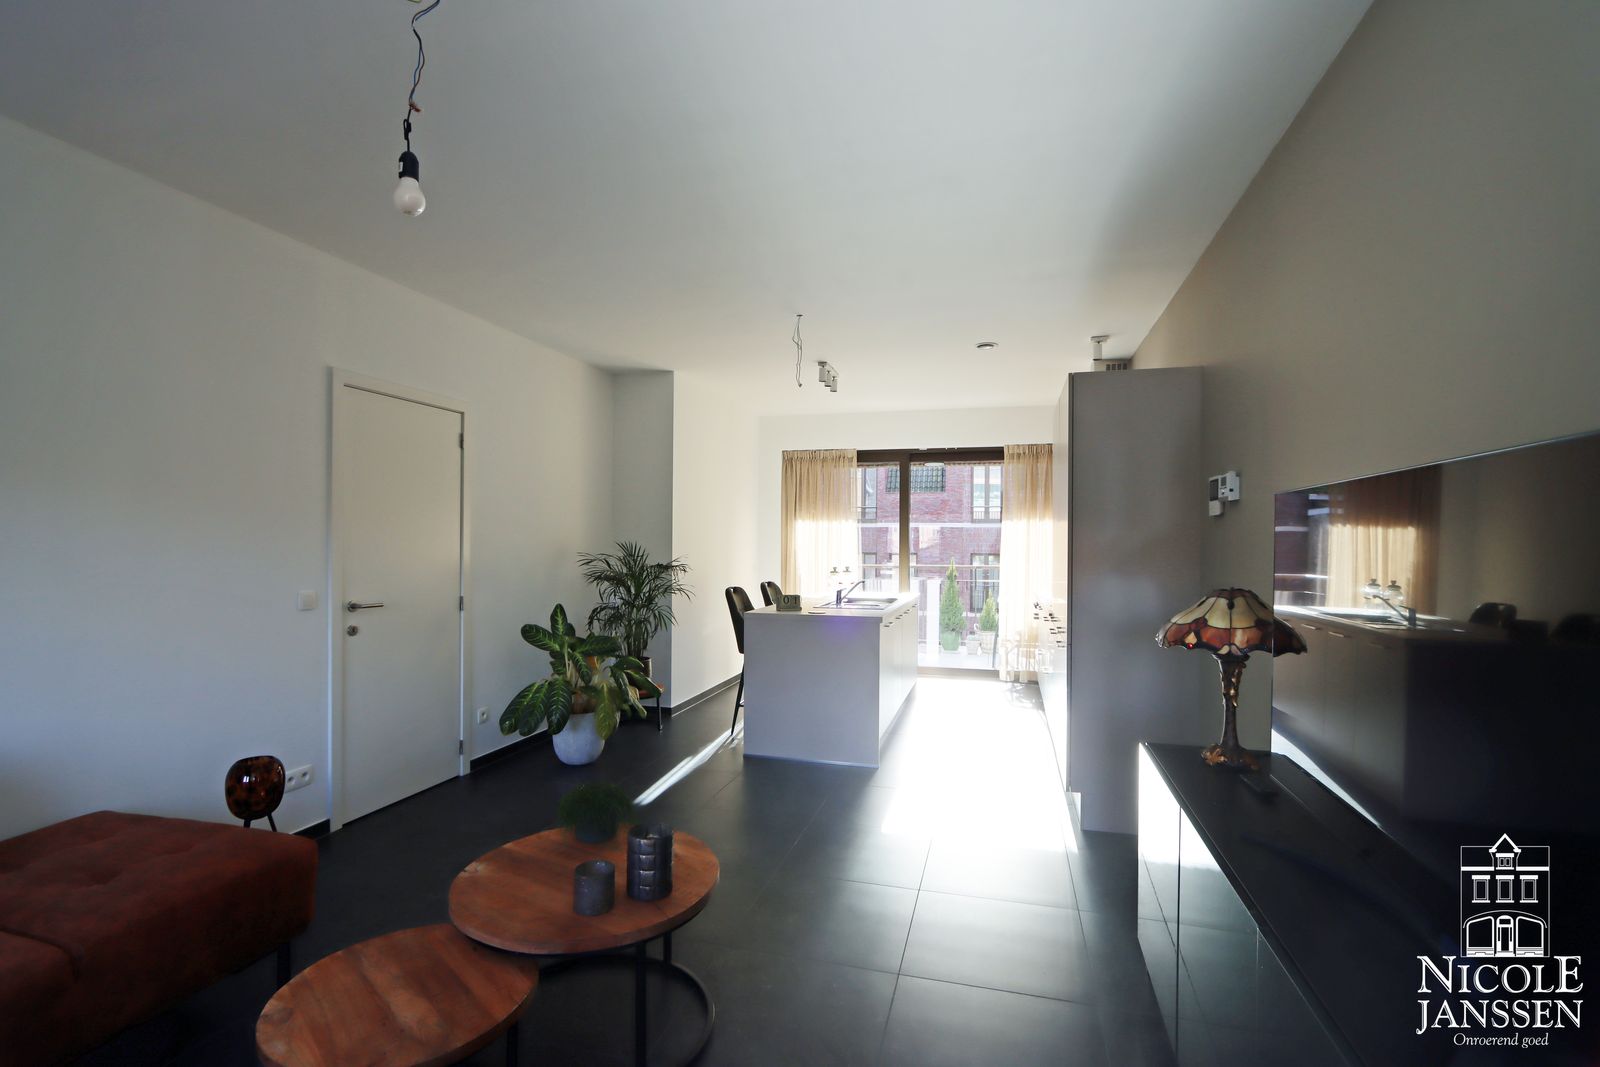 Nicole Janssen - appartement te koop - Boomgaardstraat 24 b21 te Maaseik - Keuken & woonkamer - 7.jpg